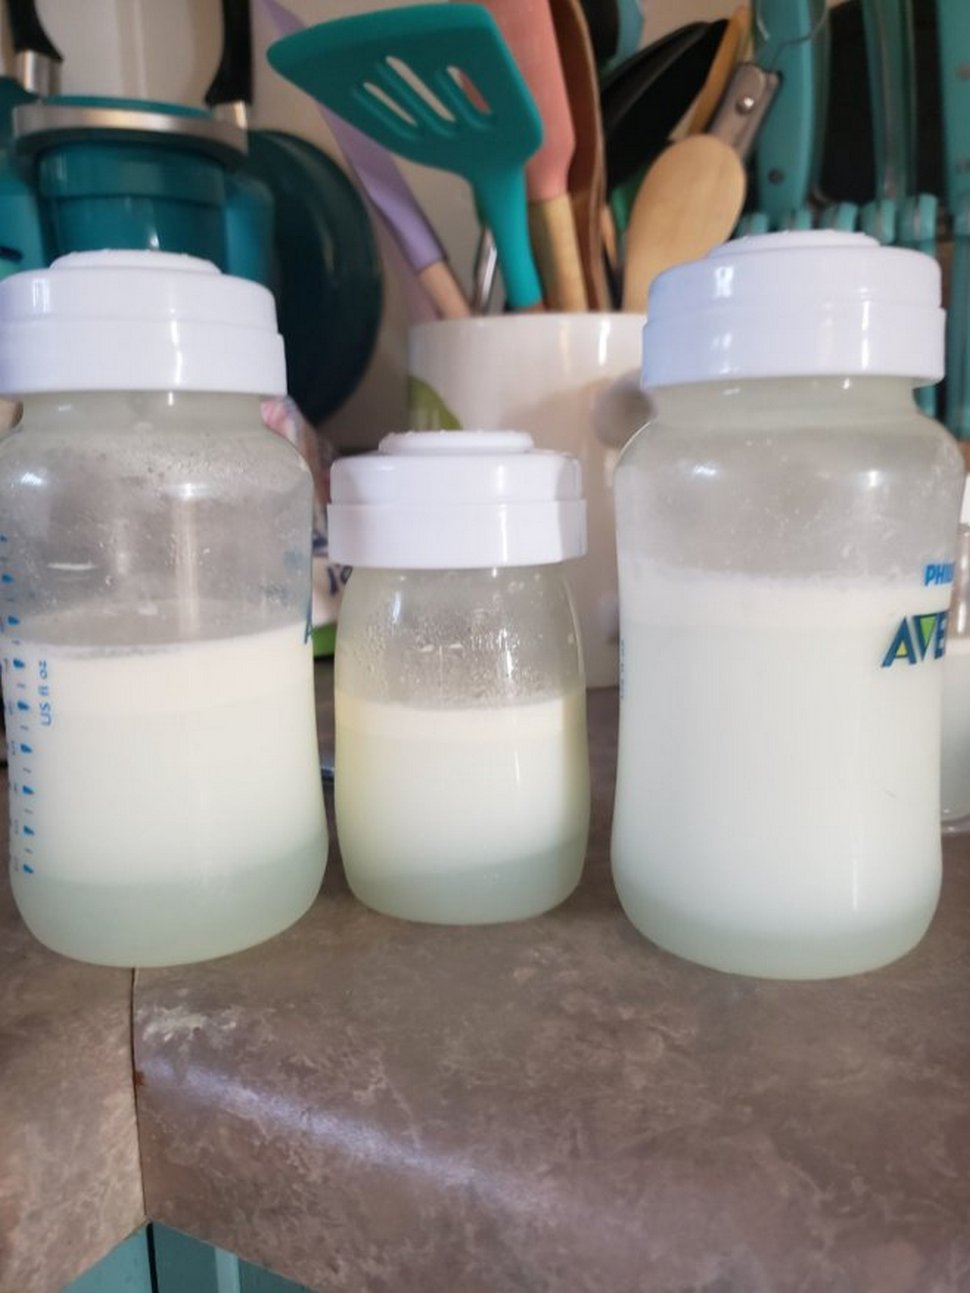 Cette mère a gagné plus de 18 000 € en vendant son lait maternel à des inconnus sur Internet